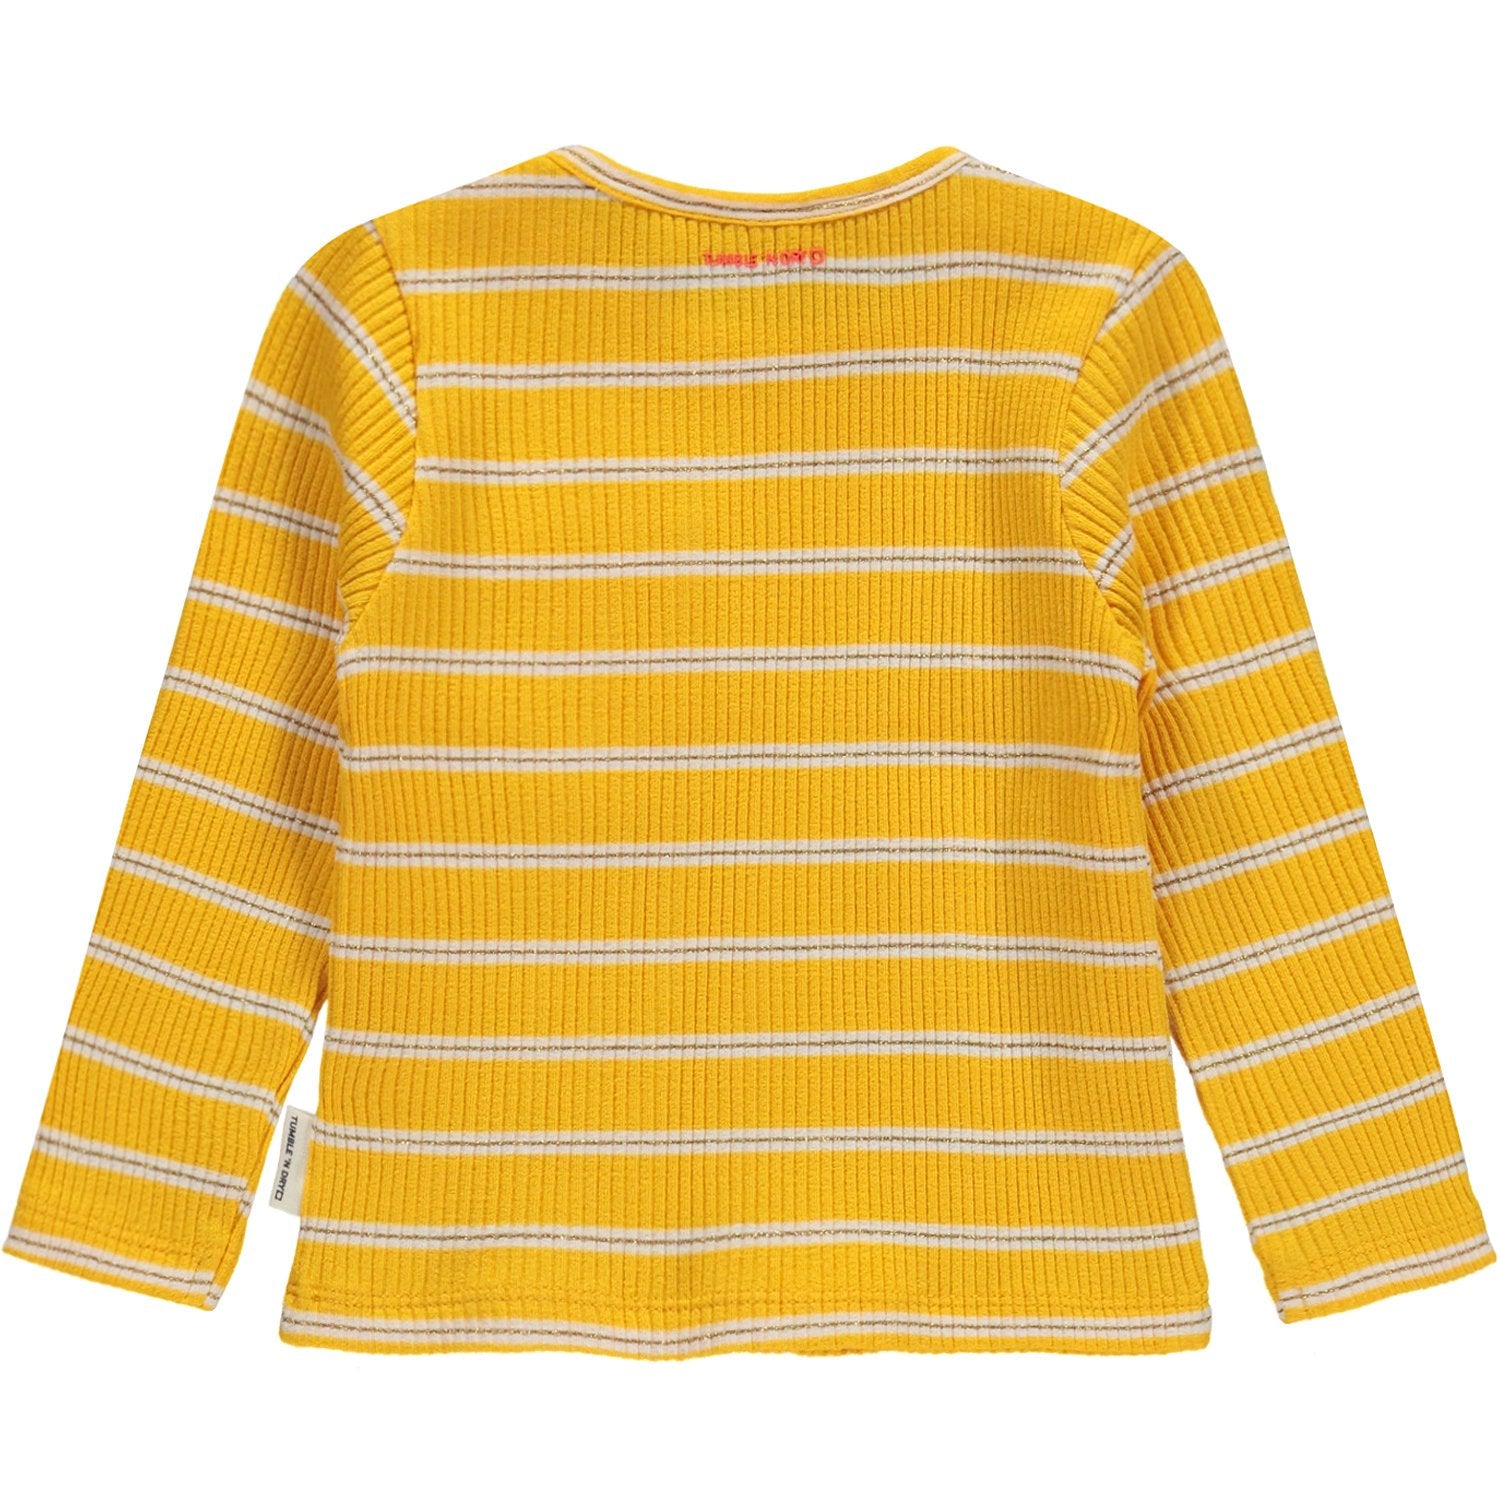 Baby Meisjes T-shirt Lm O-hals van Tumble 'n Dry in de kleur Old gold in maat 86.